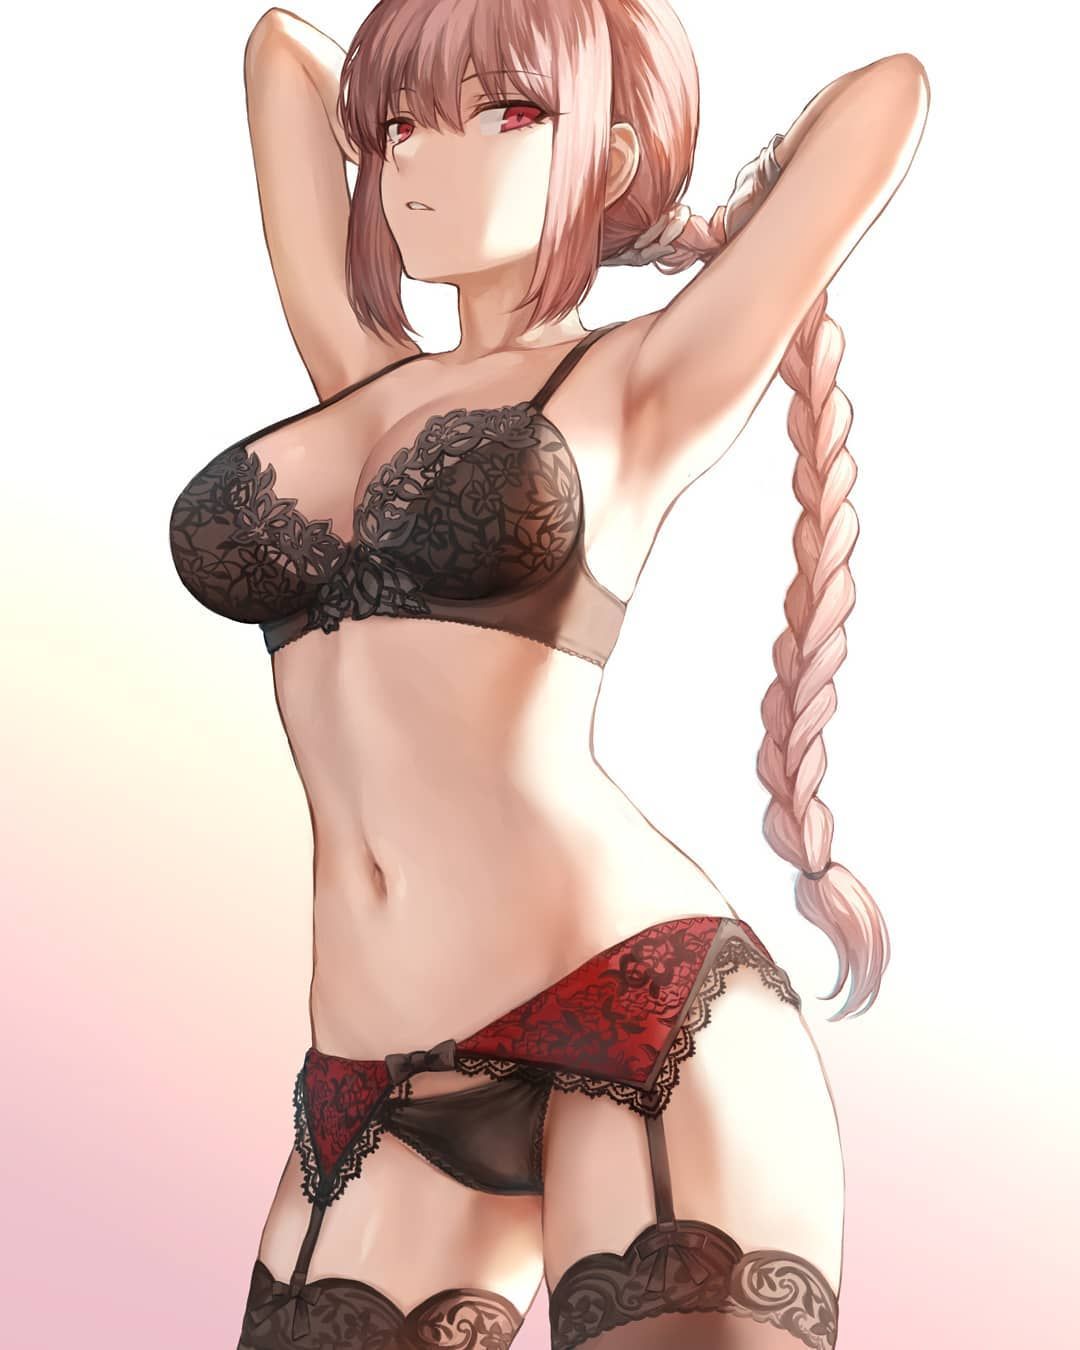 girl lingerie Anime